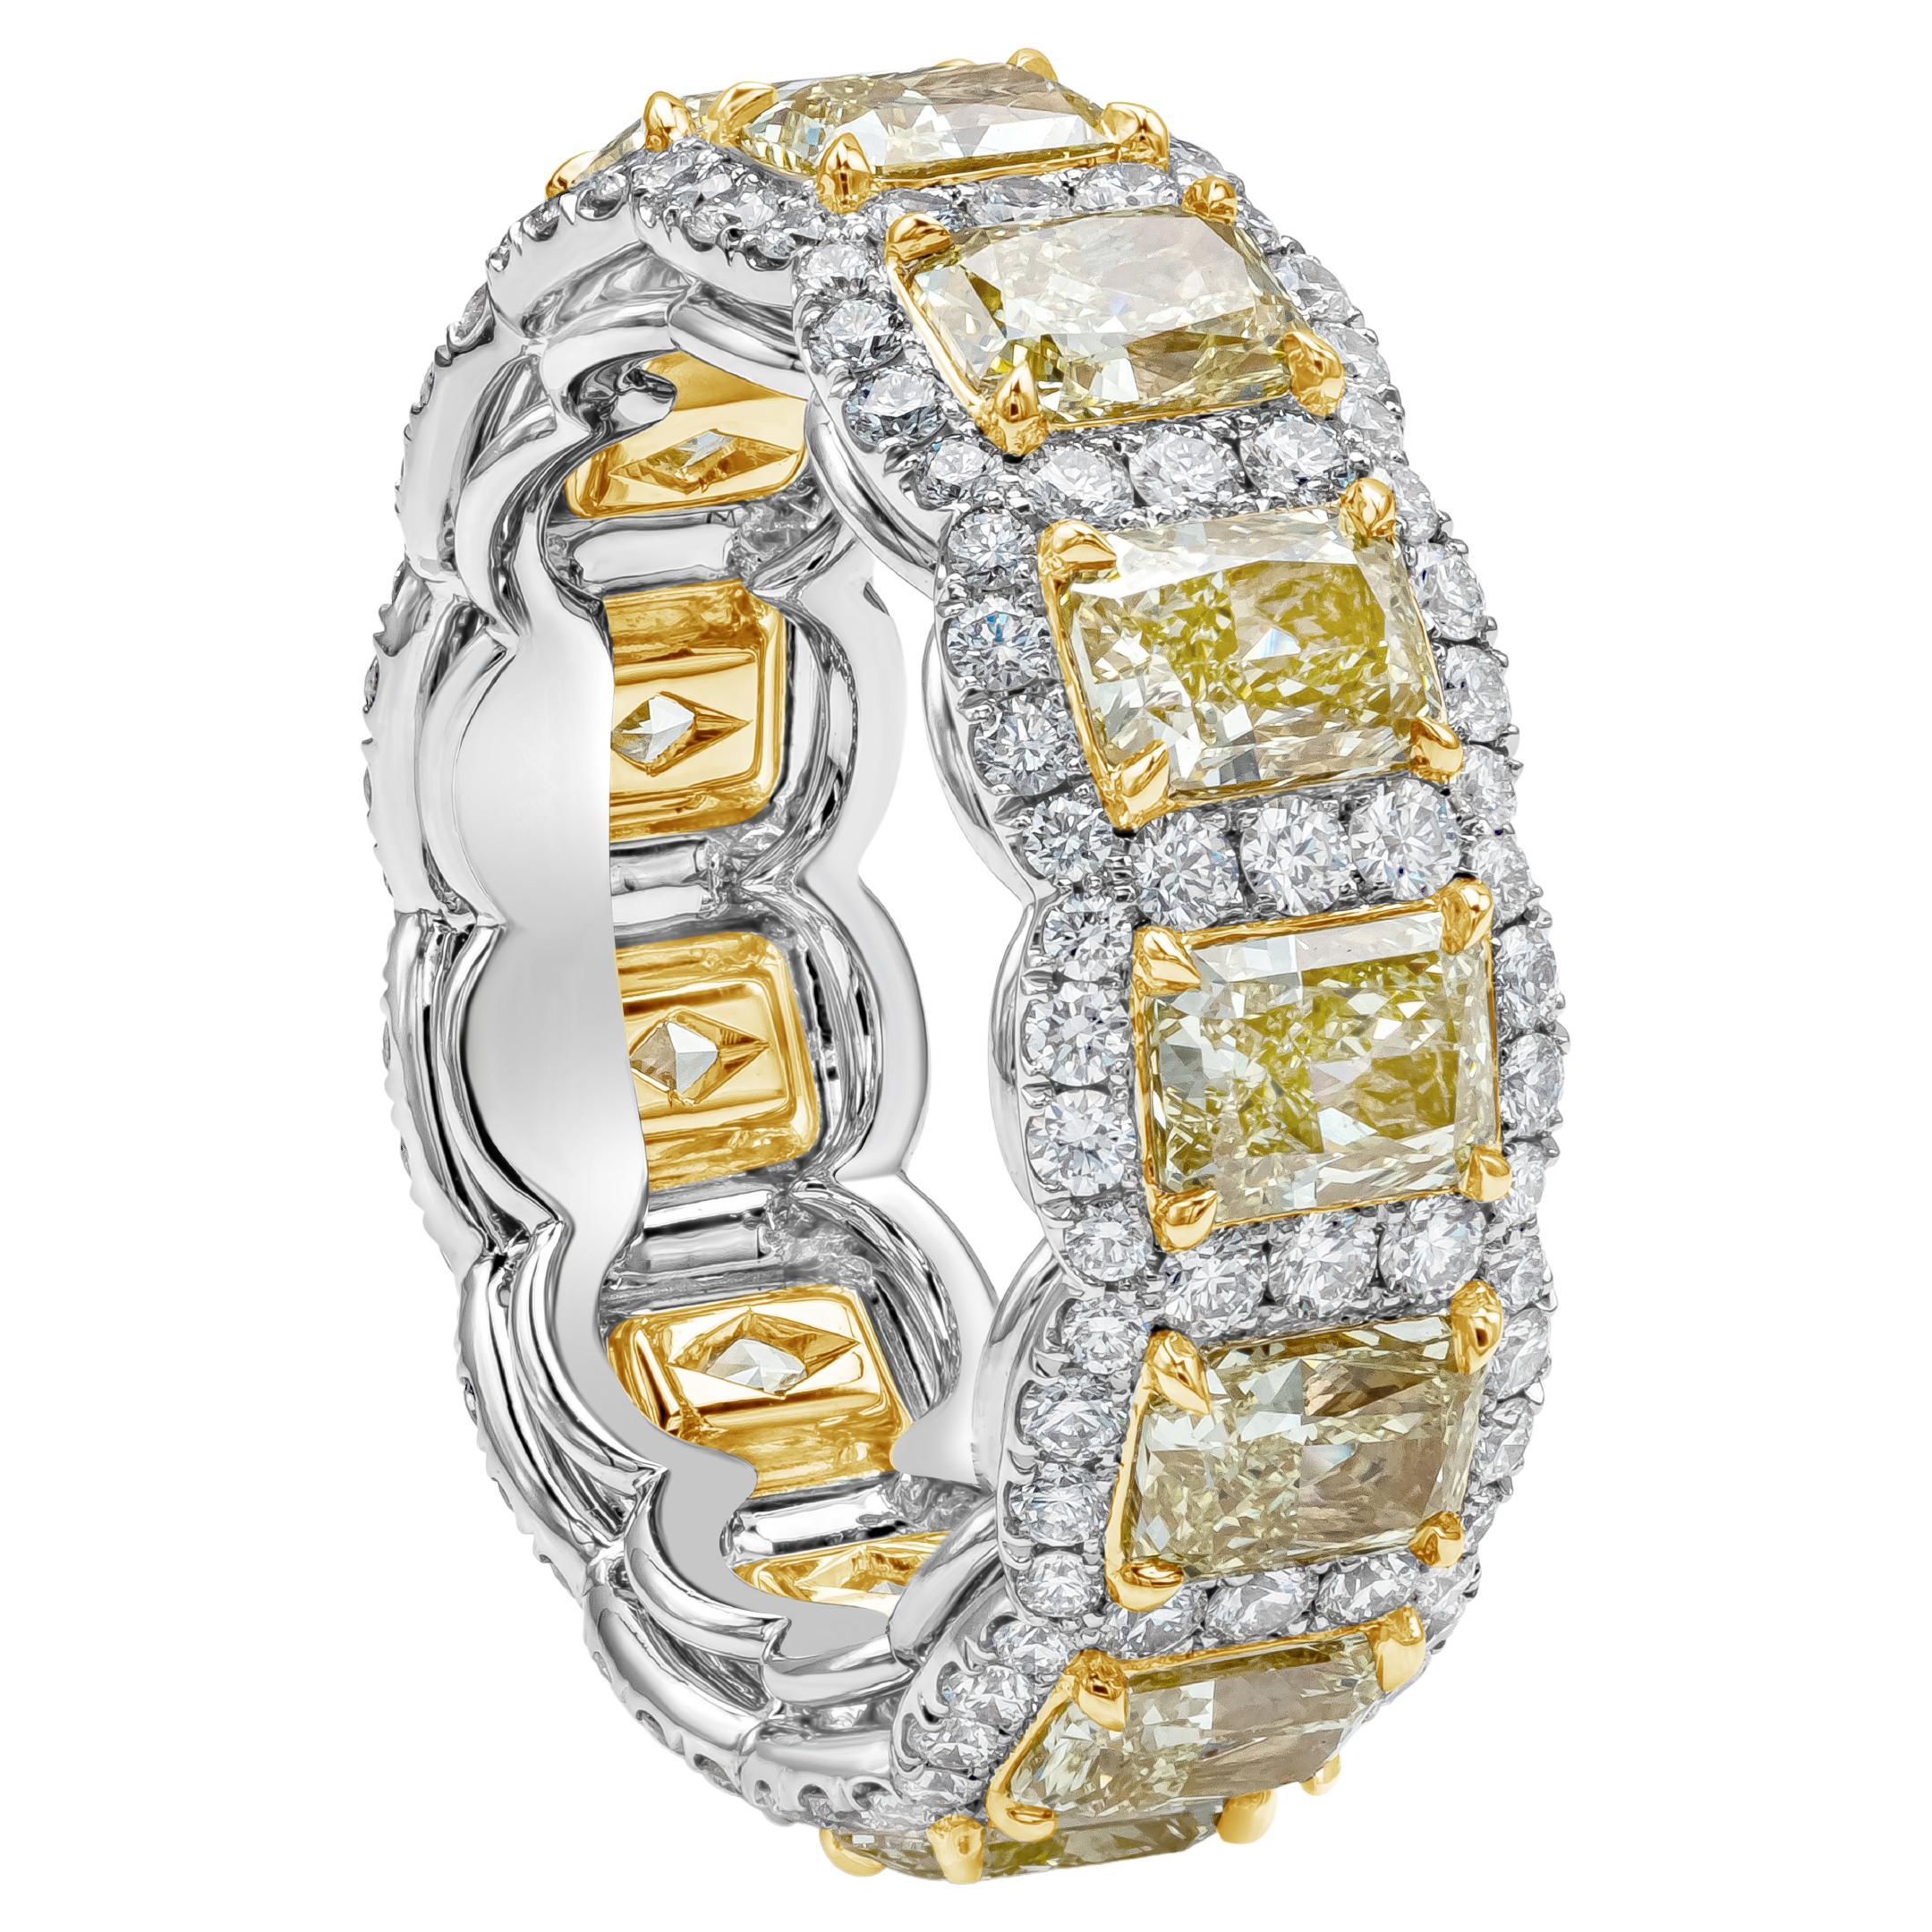 Ein stilvolles Band mit leuchtenden gelben Diamanten im Brillantschliff, die jeweils von einer einzelnen Reihe runder Brillanten umgeben sind. Die gelben Diamanten wiegen insgesamt 5.33 Karat, Reinheit VS. Runde Diamanten wiegen insgesamt 1,30